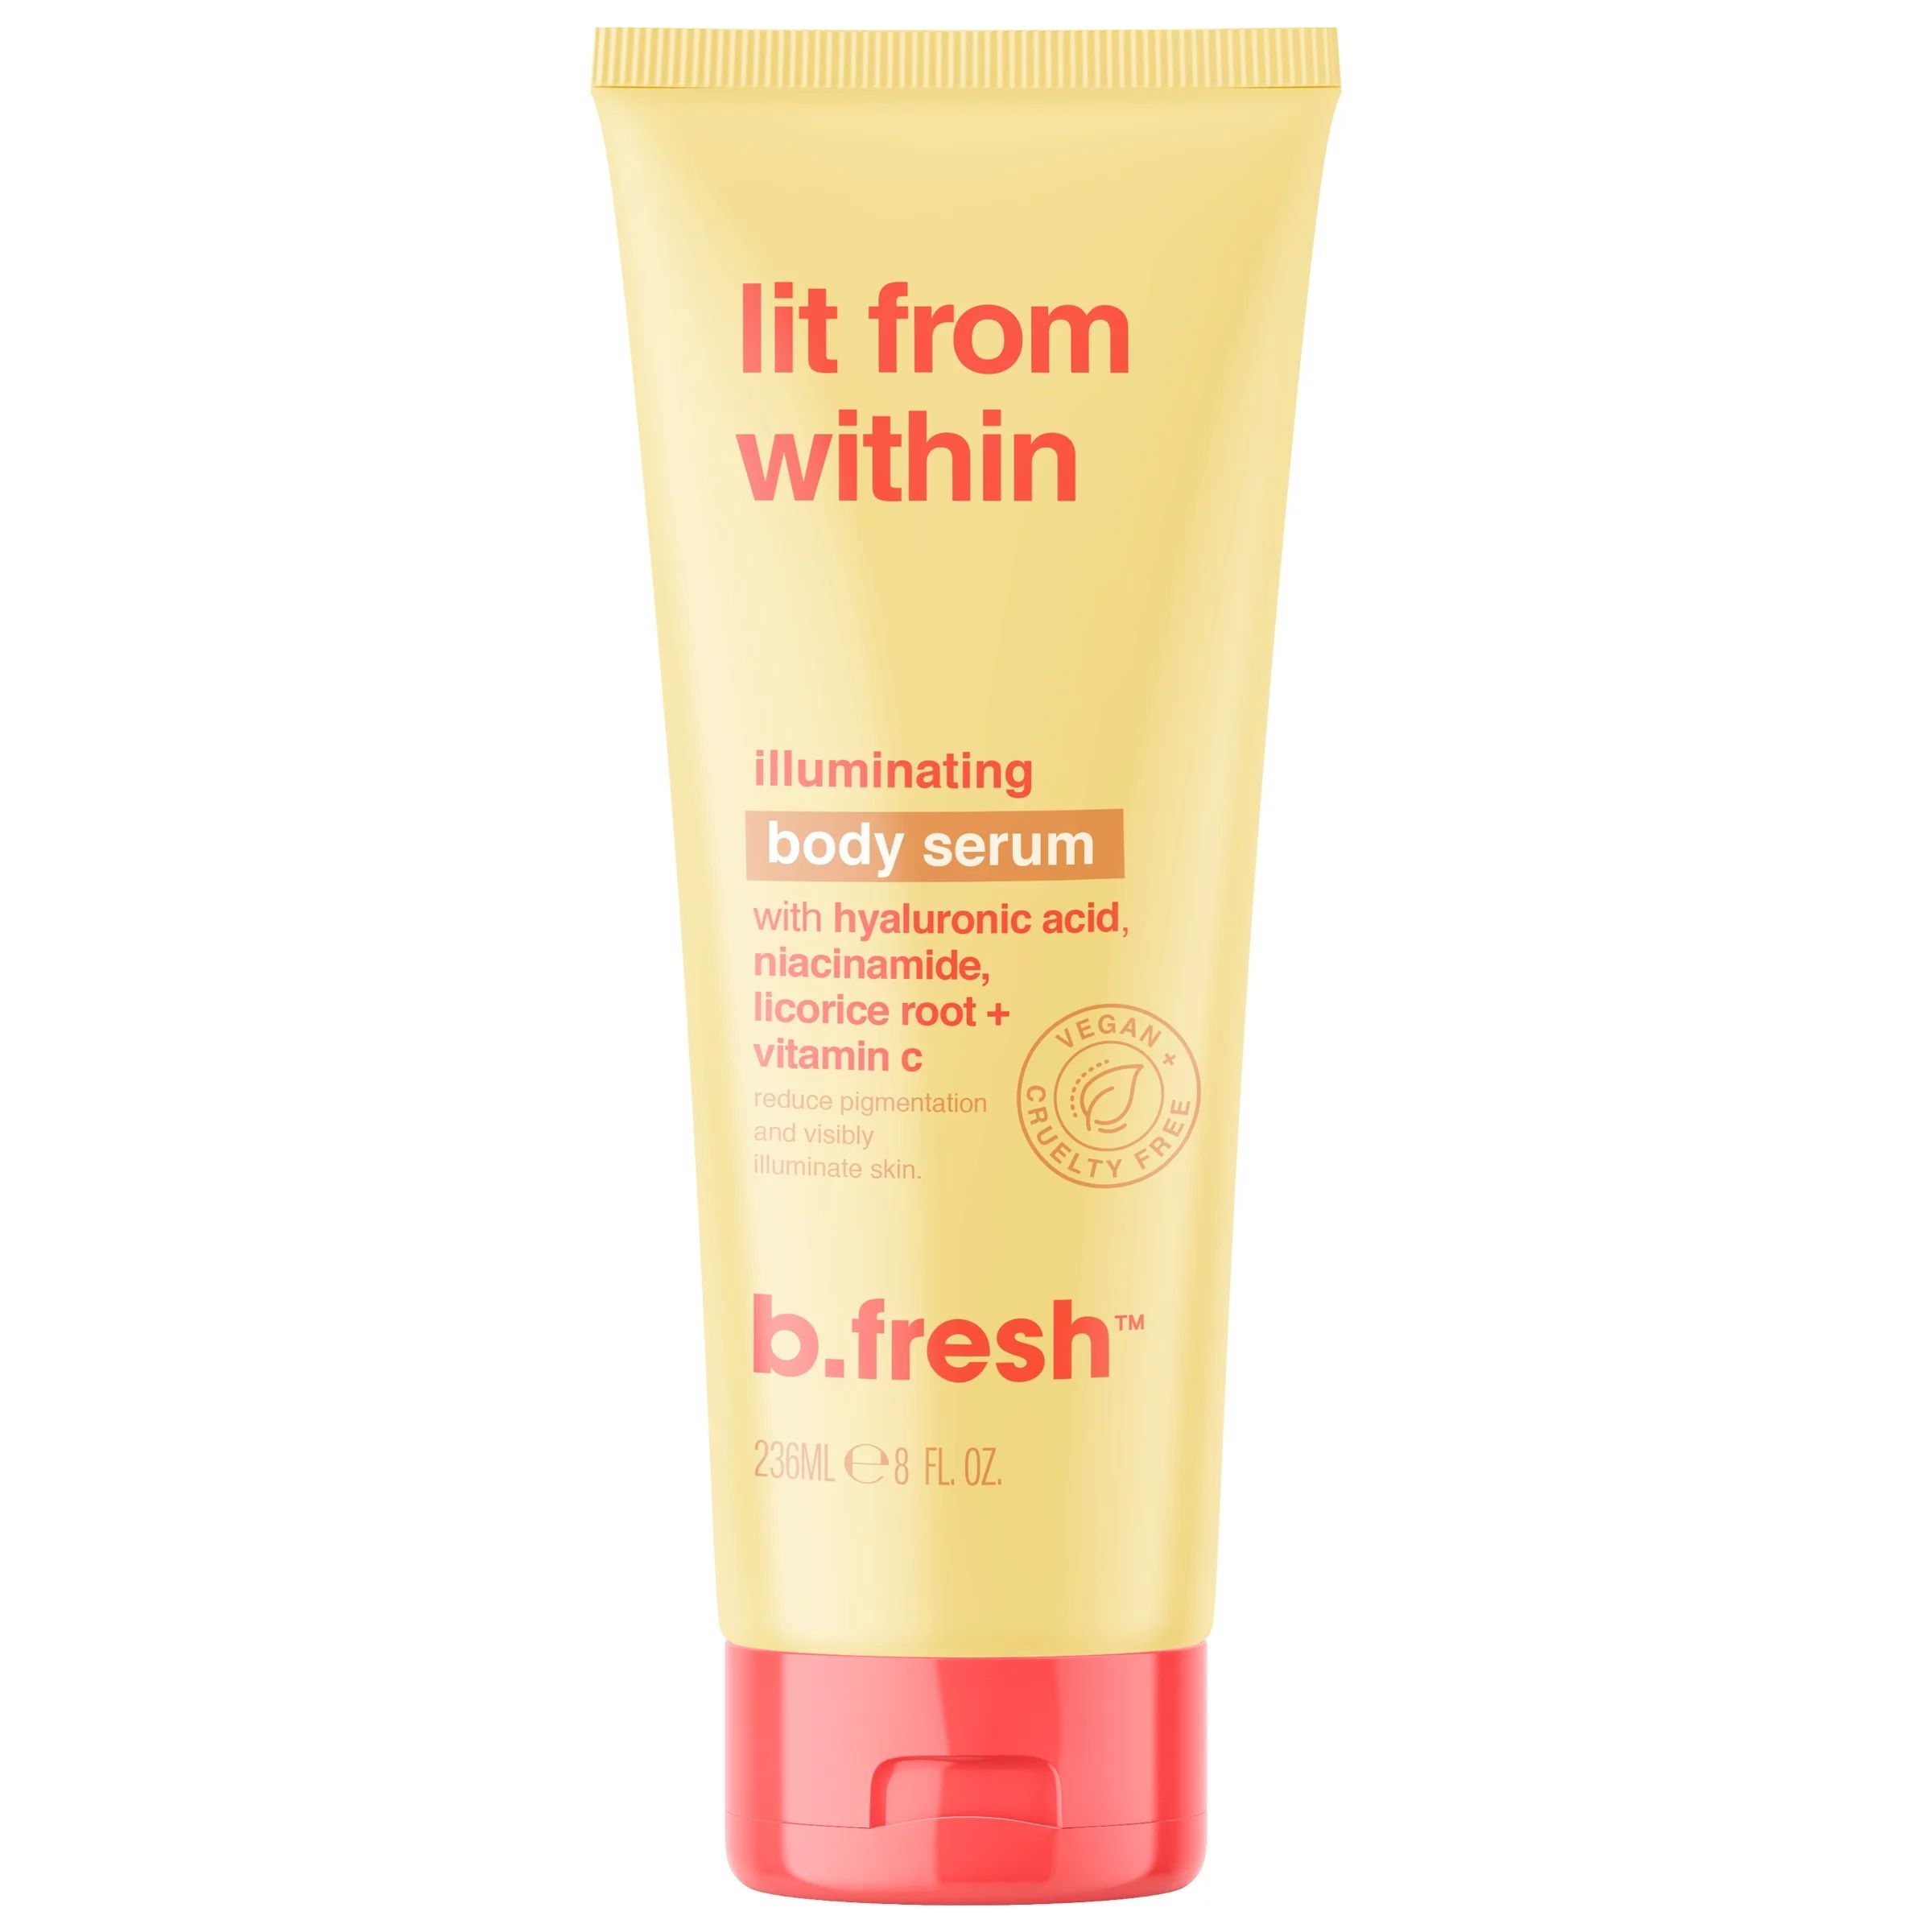 b.fresh lit from within illuminating body serum | Walmart (US)